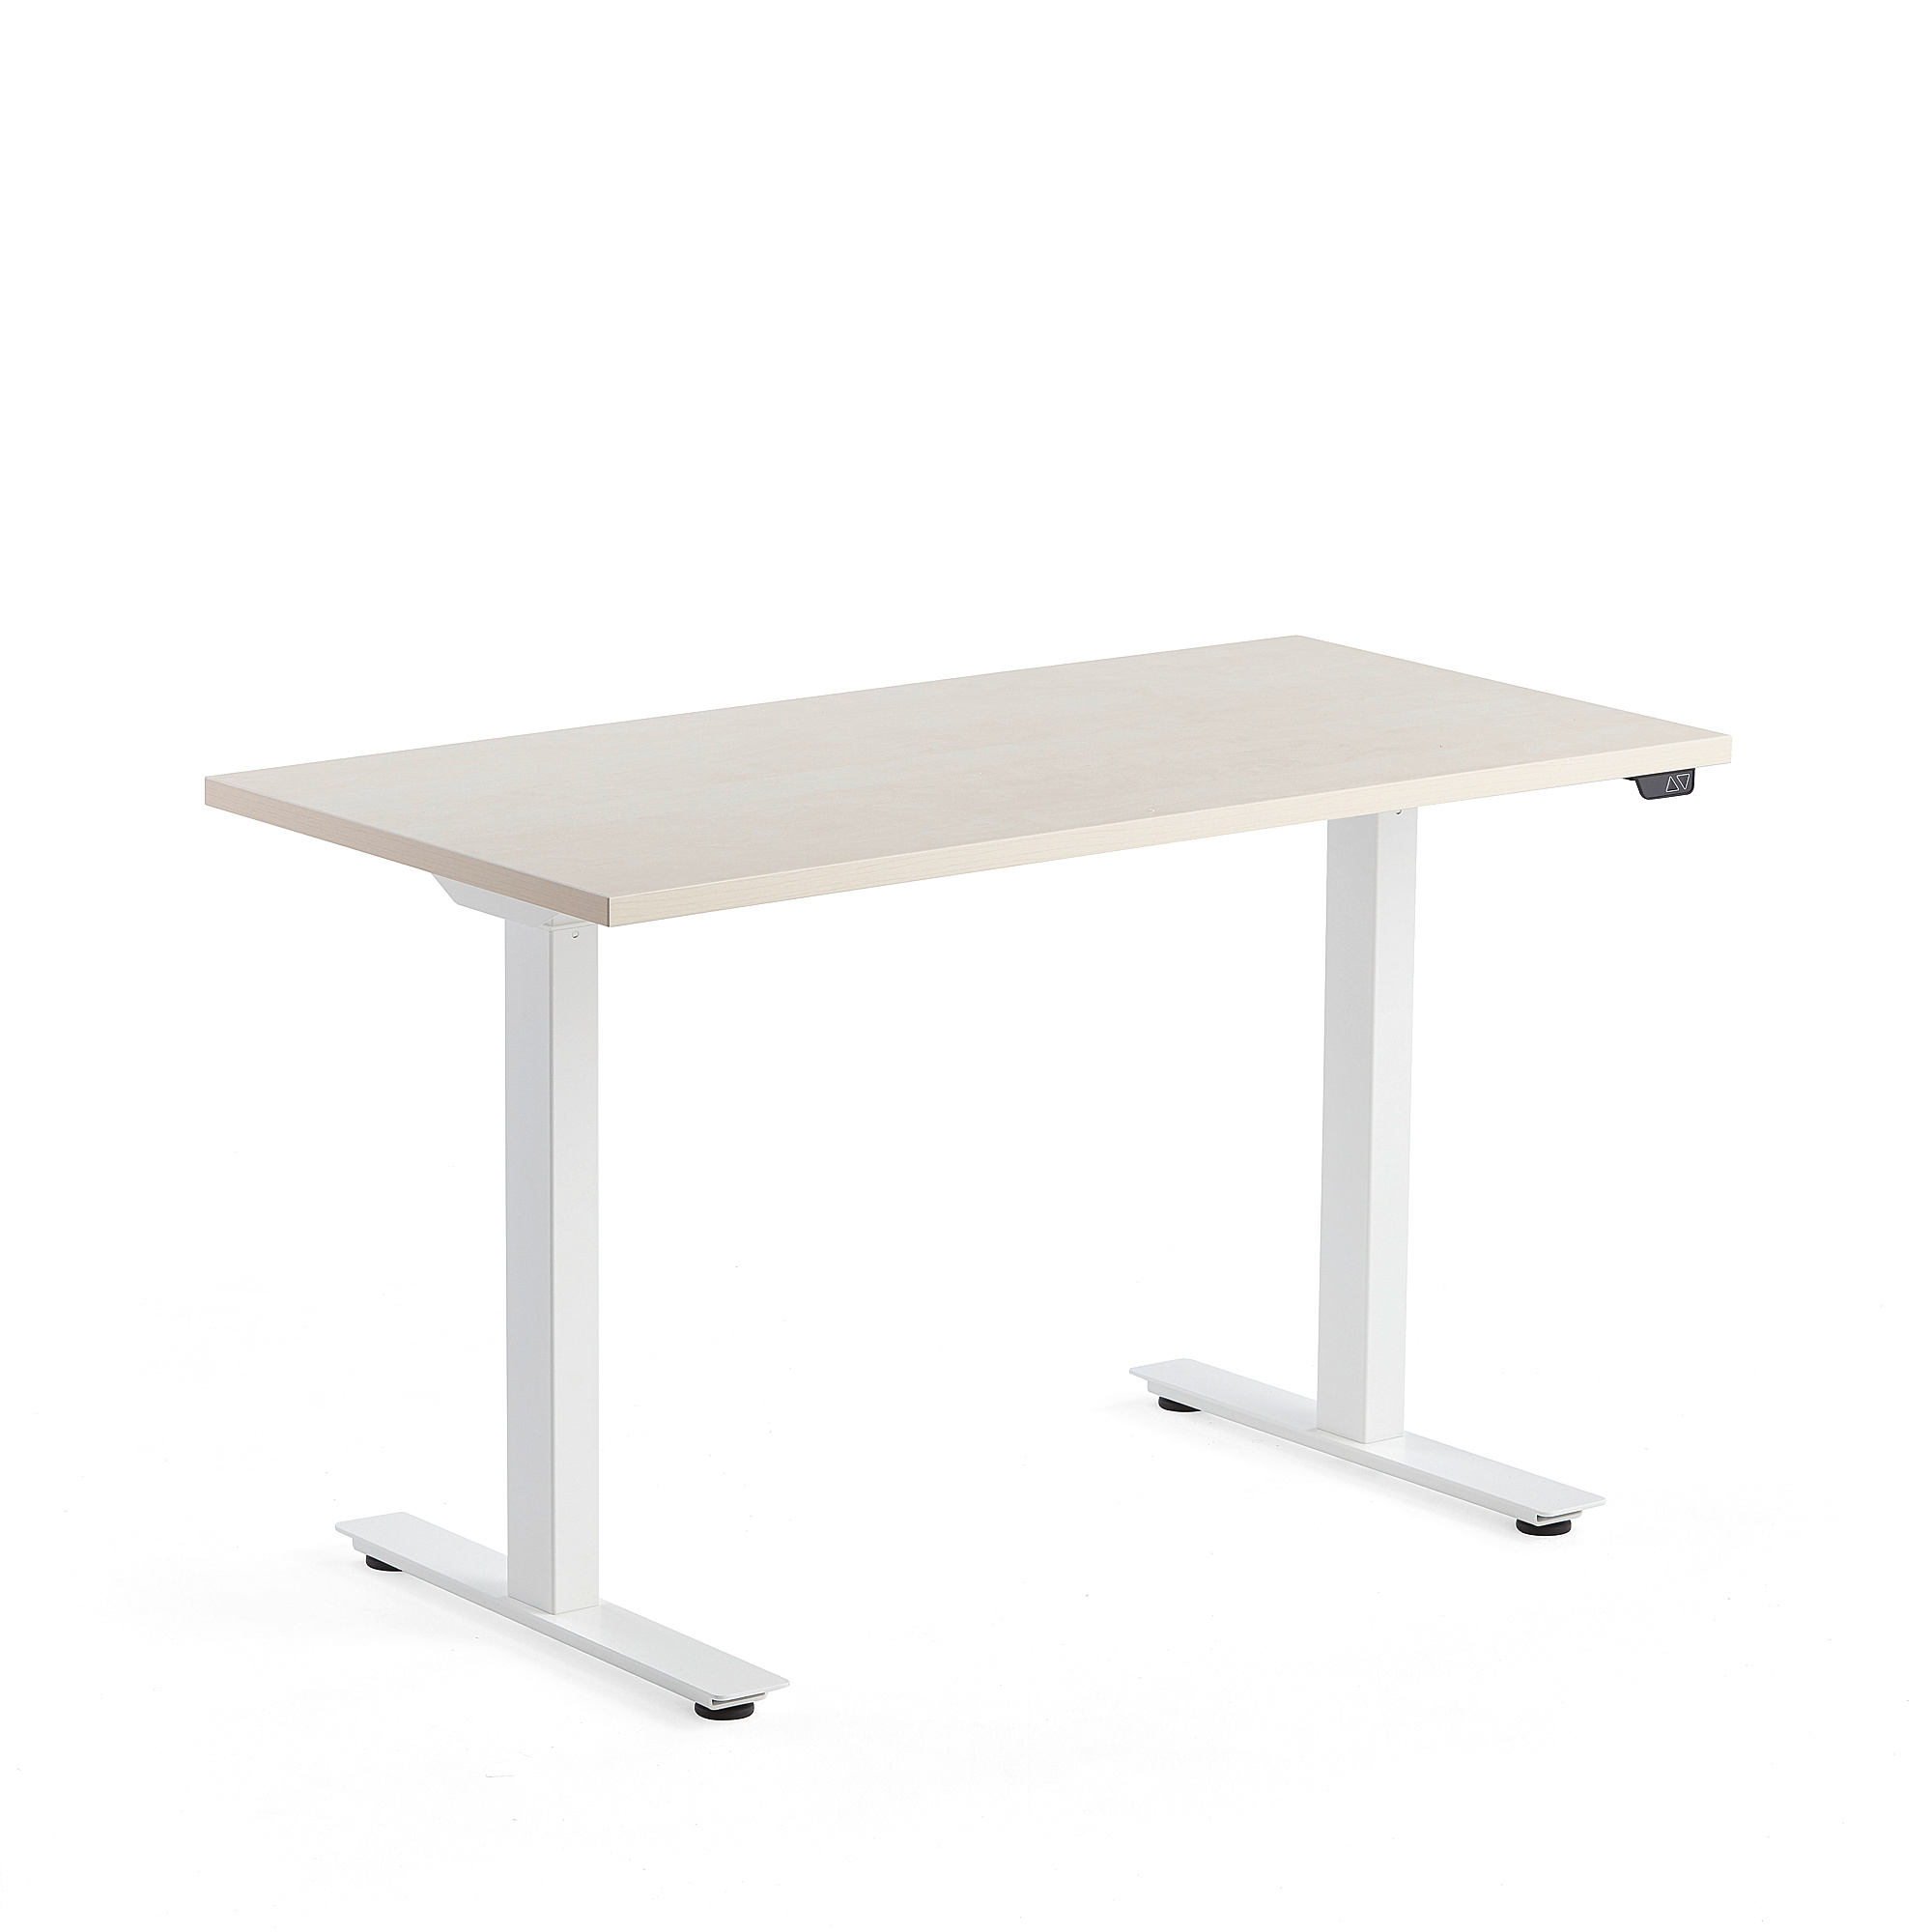 Výškově nastavitelný stůl MODULUS, 1200x600 mm, bílý rám, bříza